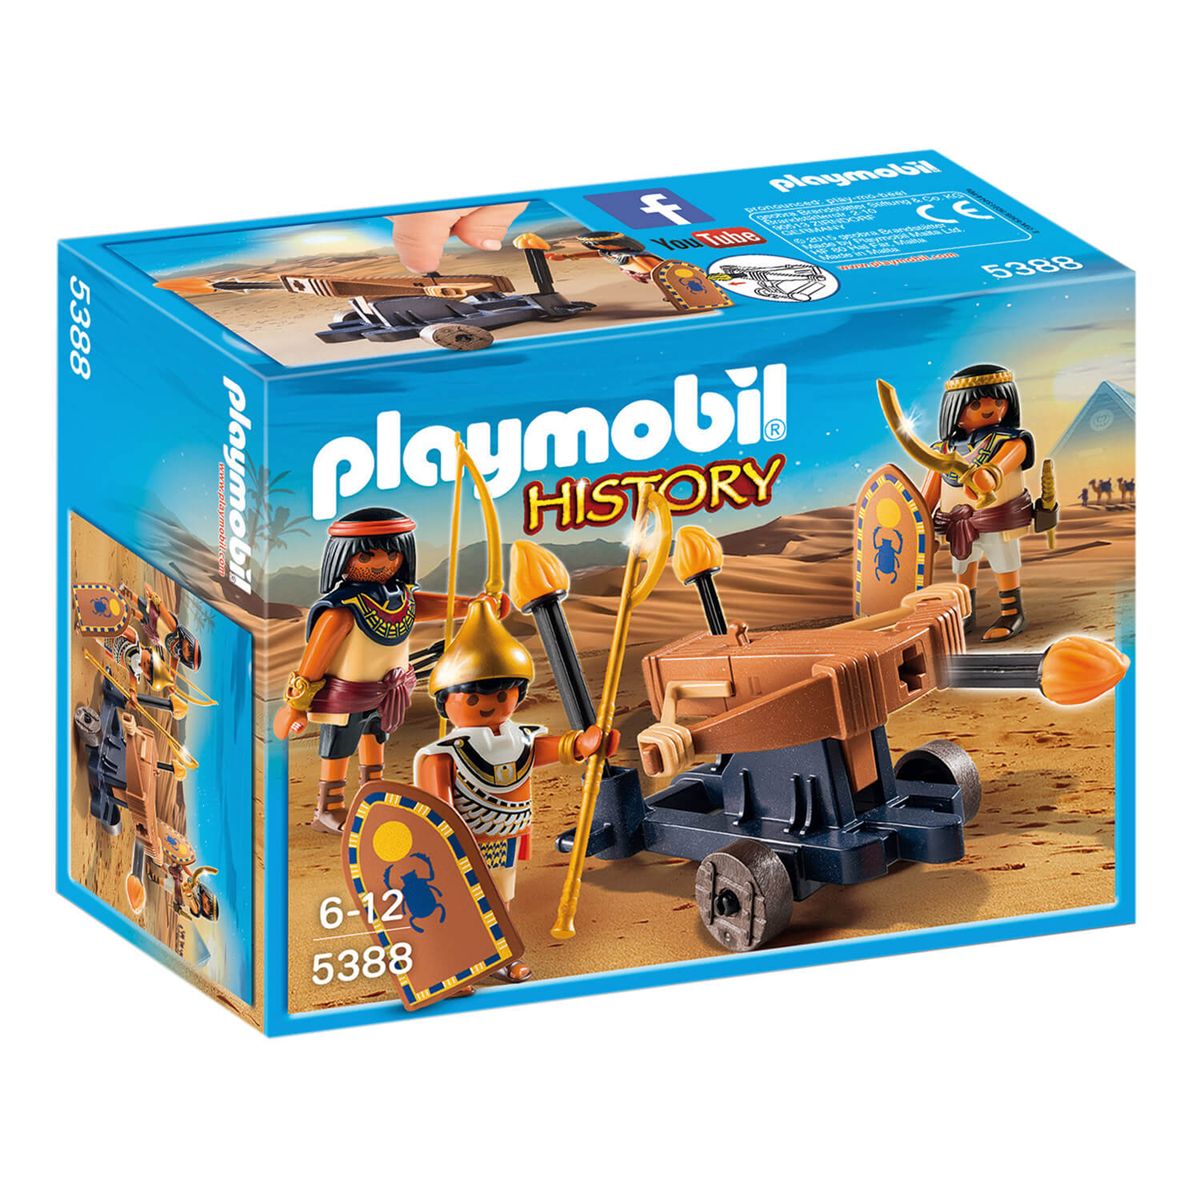 egyptien playmobil